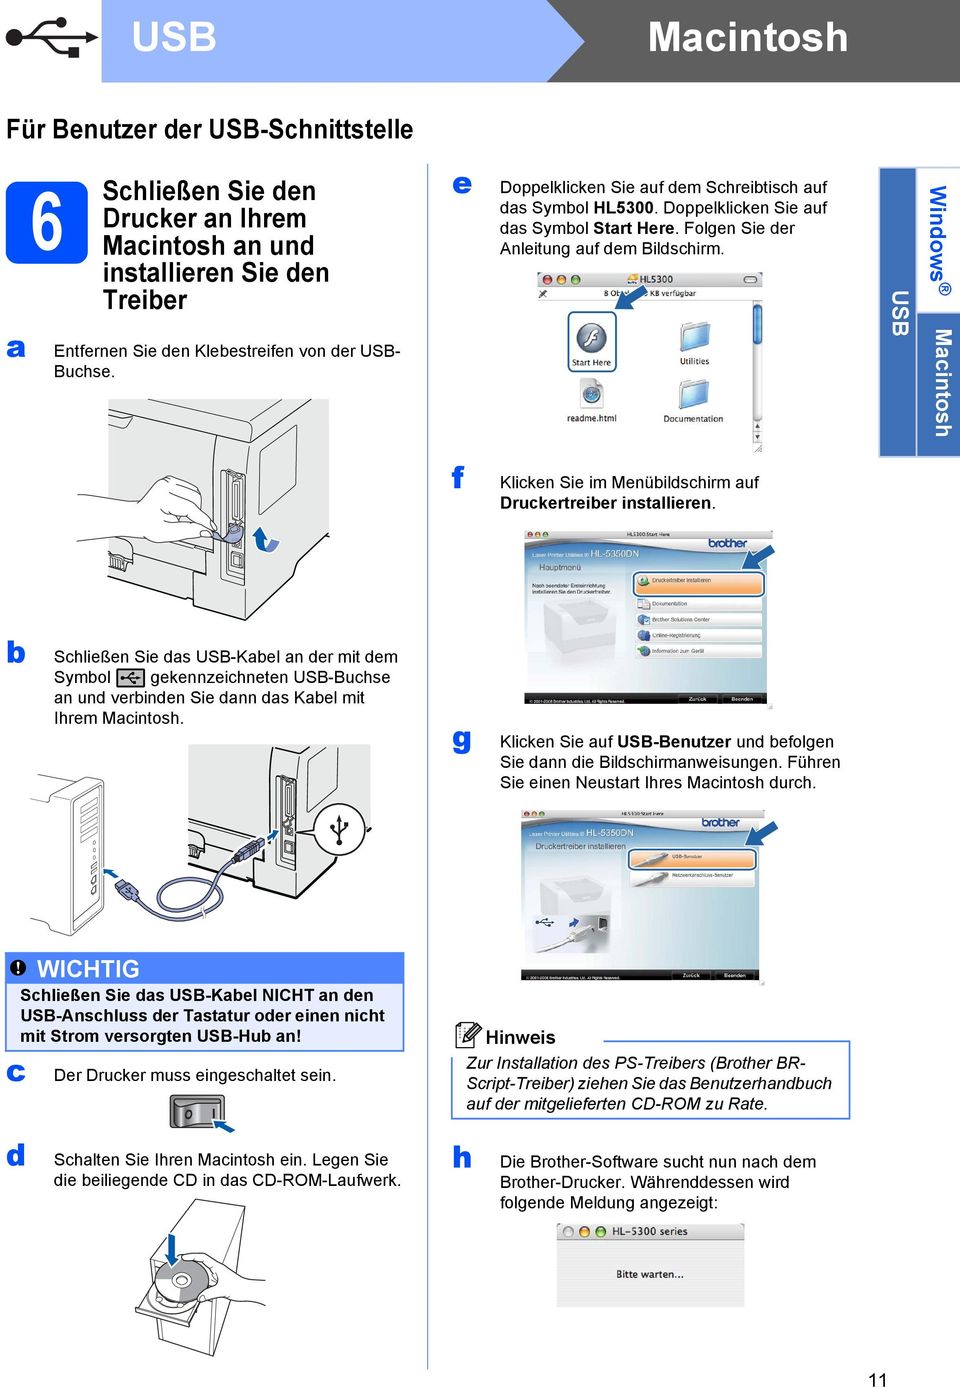 USB Windows Macintosh f Klicken Sie im Menübildschirm auf Druckertreiber installieren.